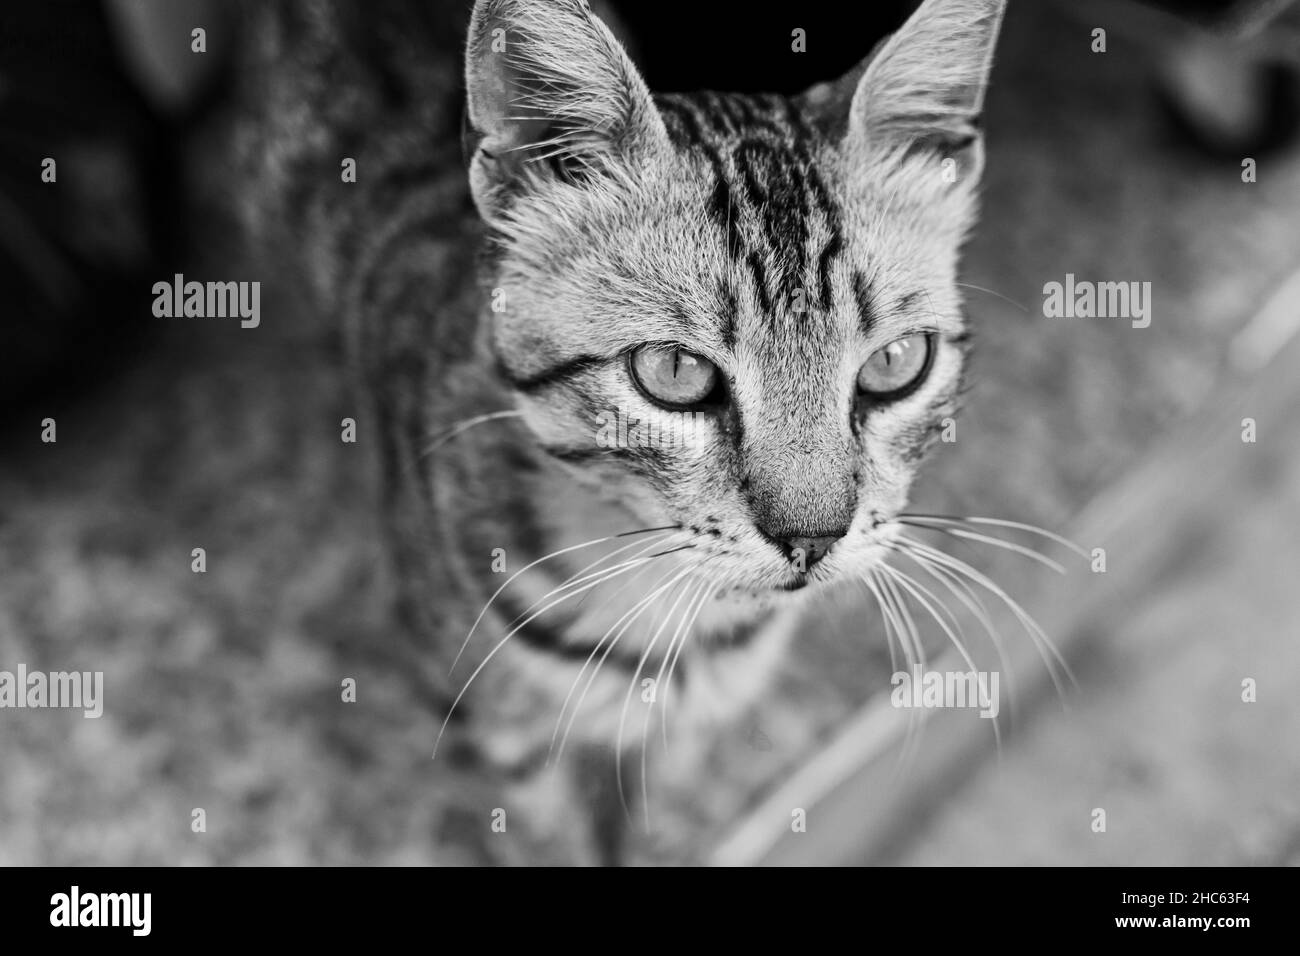 Portrait en niveaux de gris d'un chat tabby avec un regard sérieux Banque D'Images